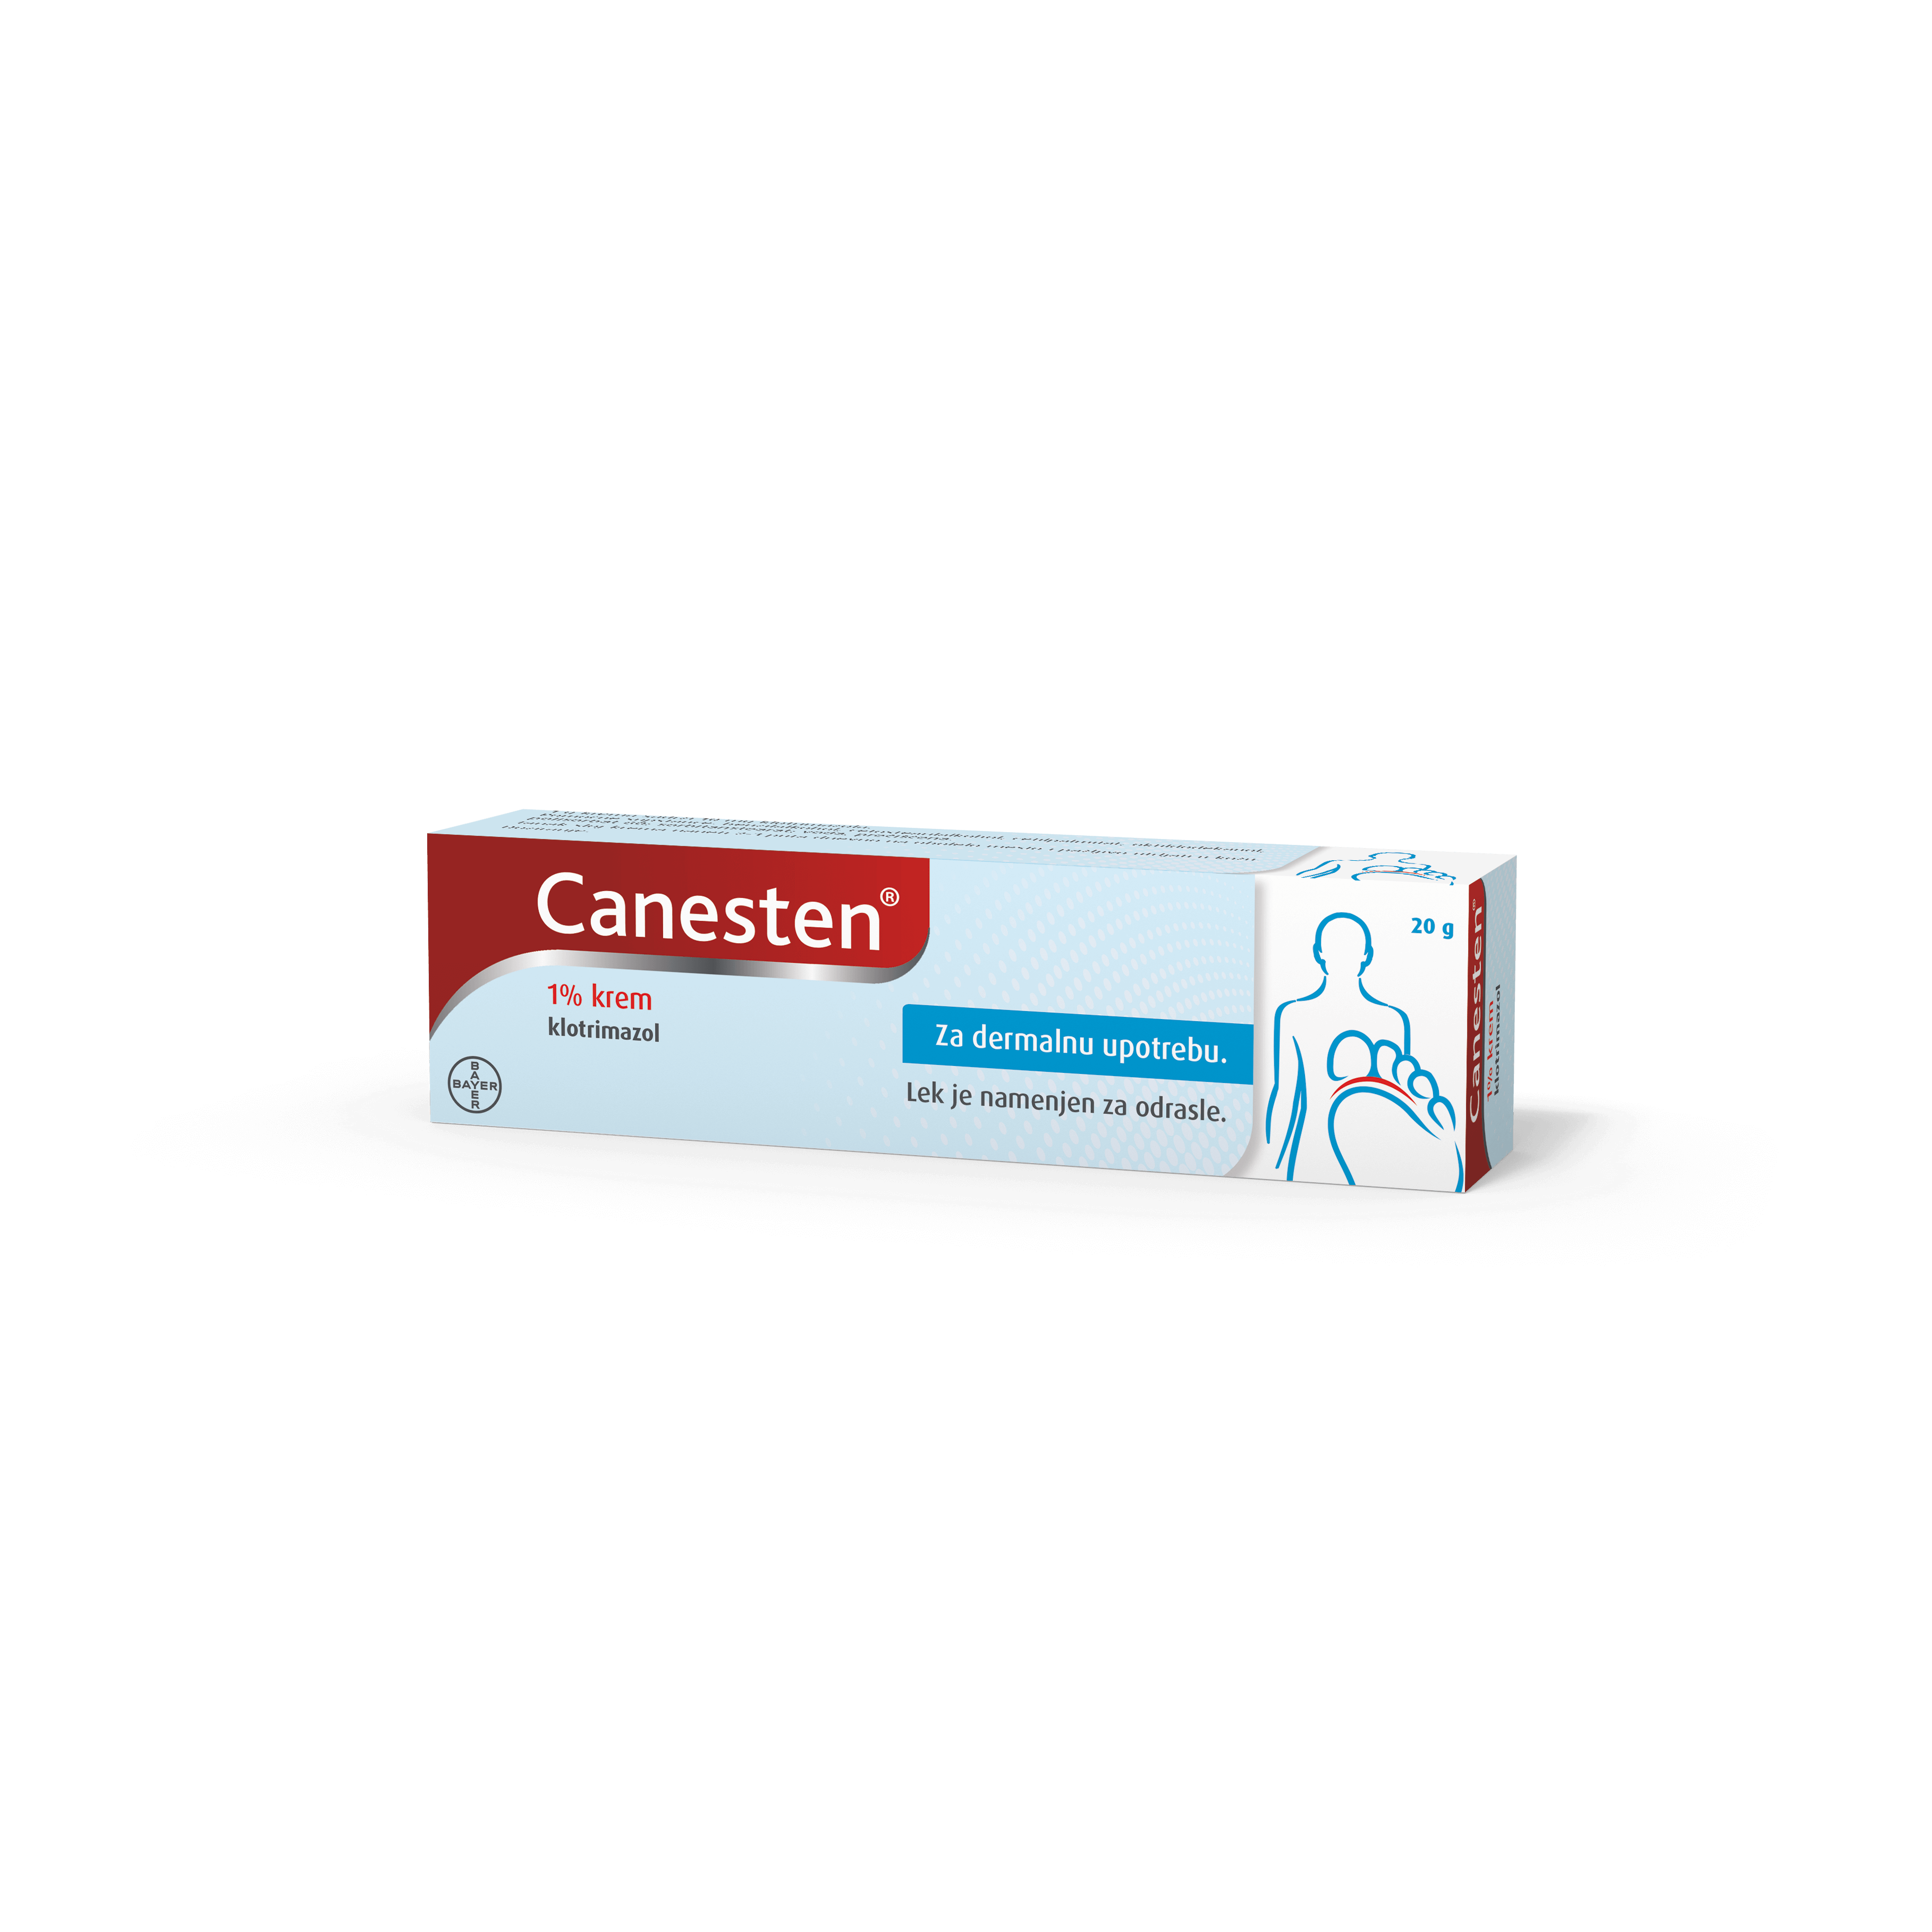 CANESTEN klotrimazol box